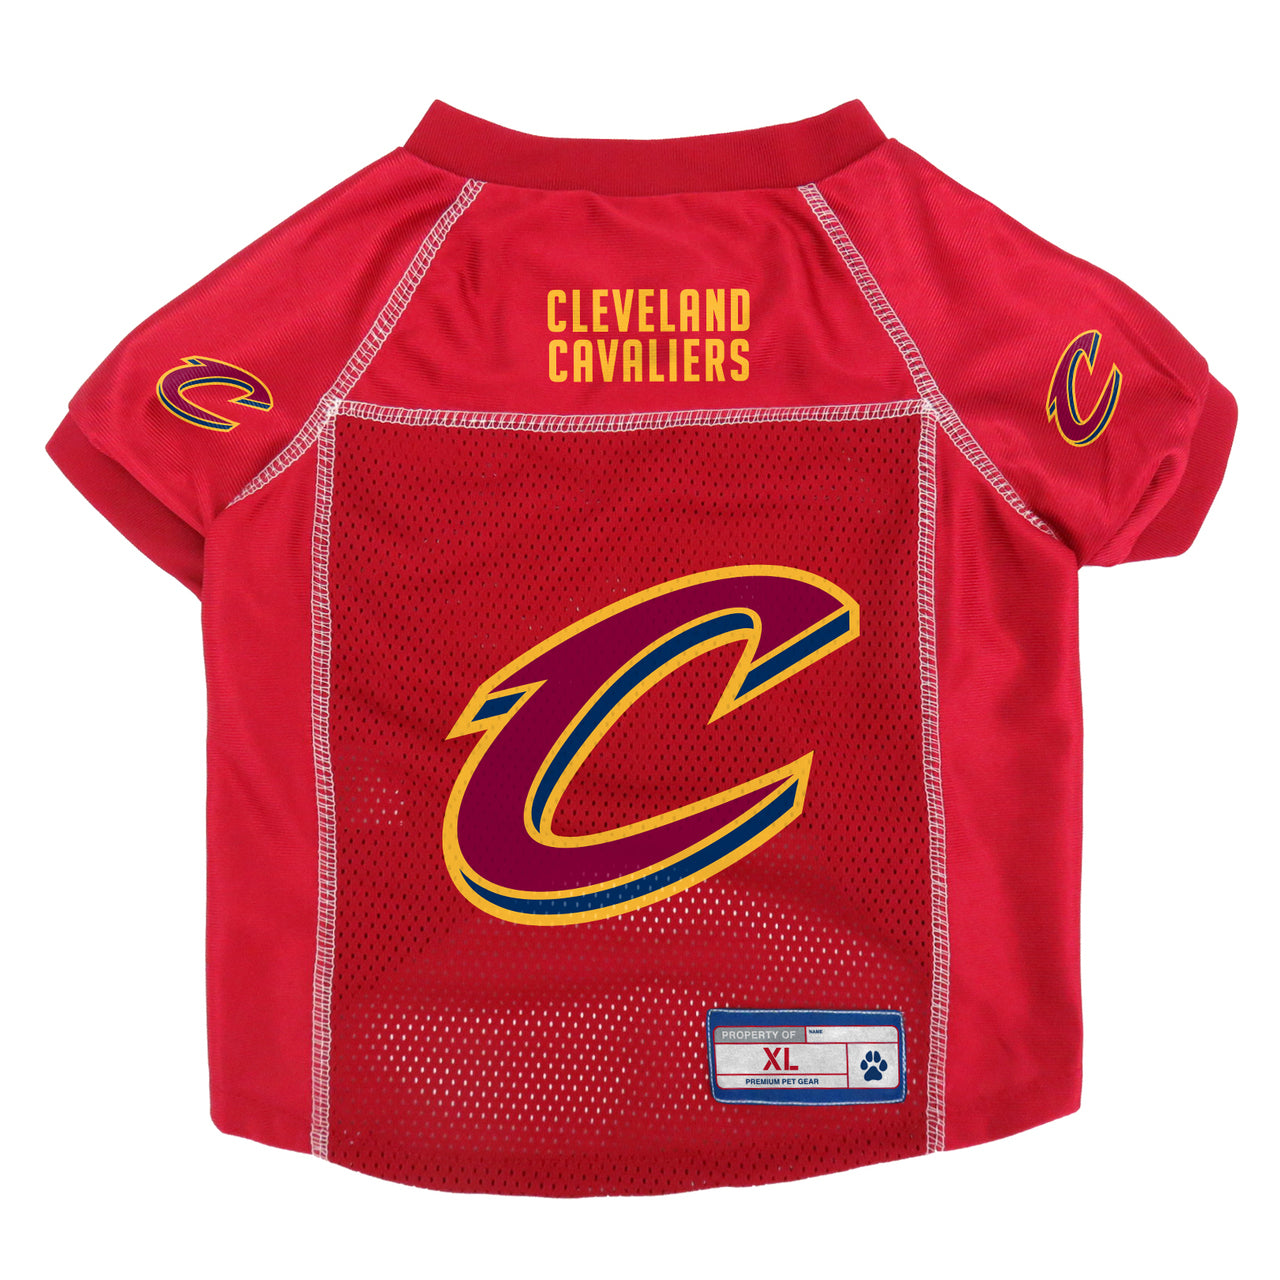 Cleveland Cavaliers Jerseys & Gear.